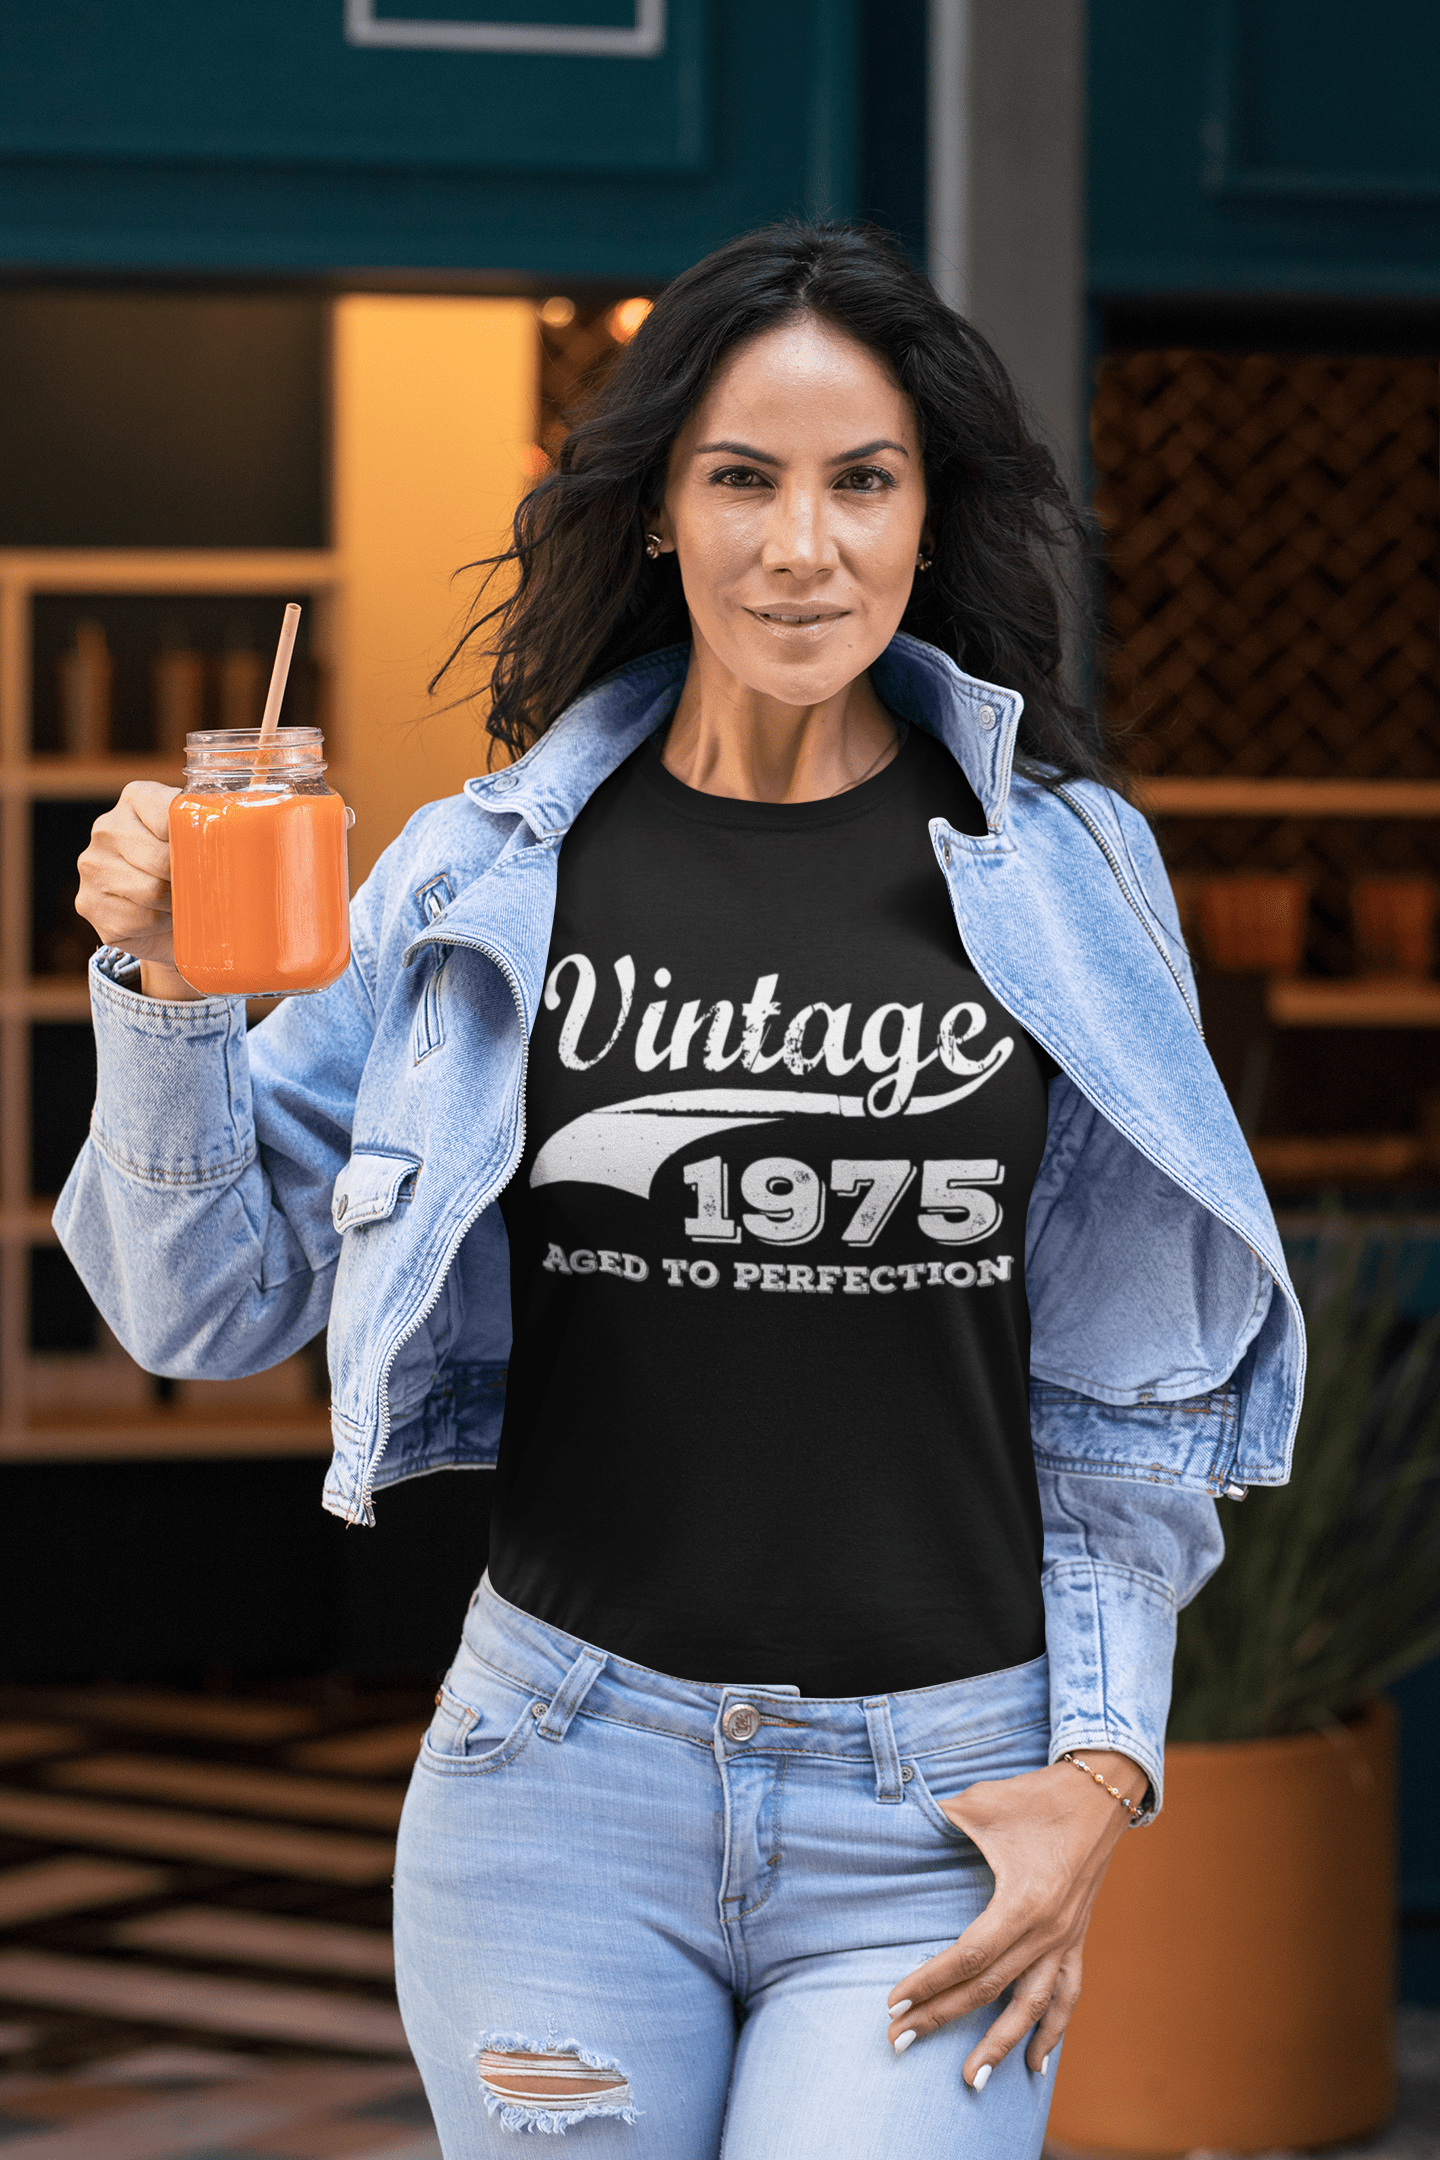 Vintage Aged to Perfection 1975, Noir, T-shirt à manches courtes et col rond pour femmes, t-shirt cadeau 00345